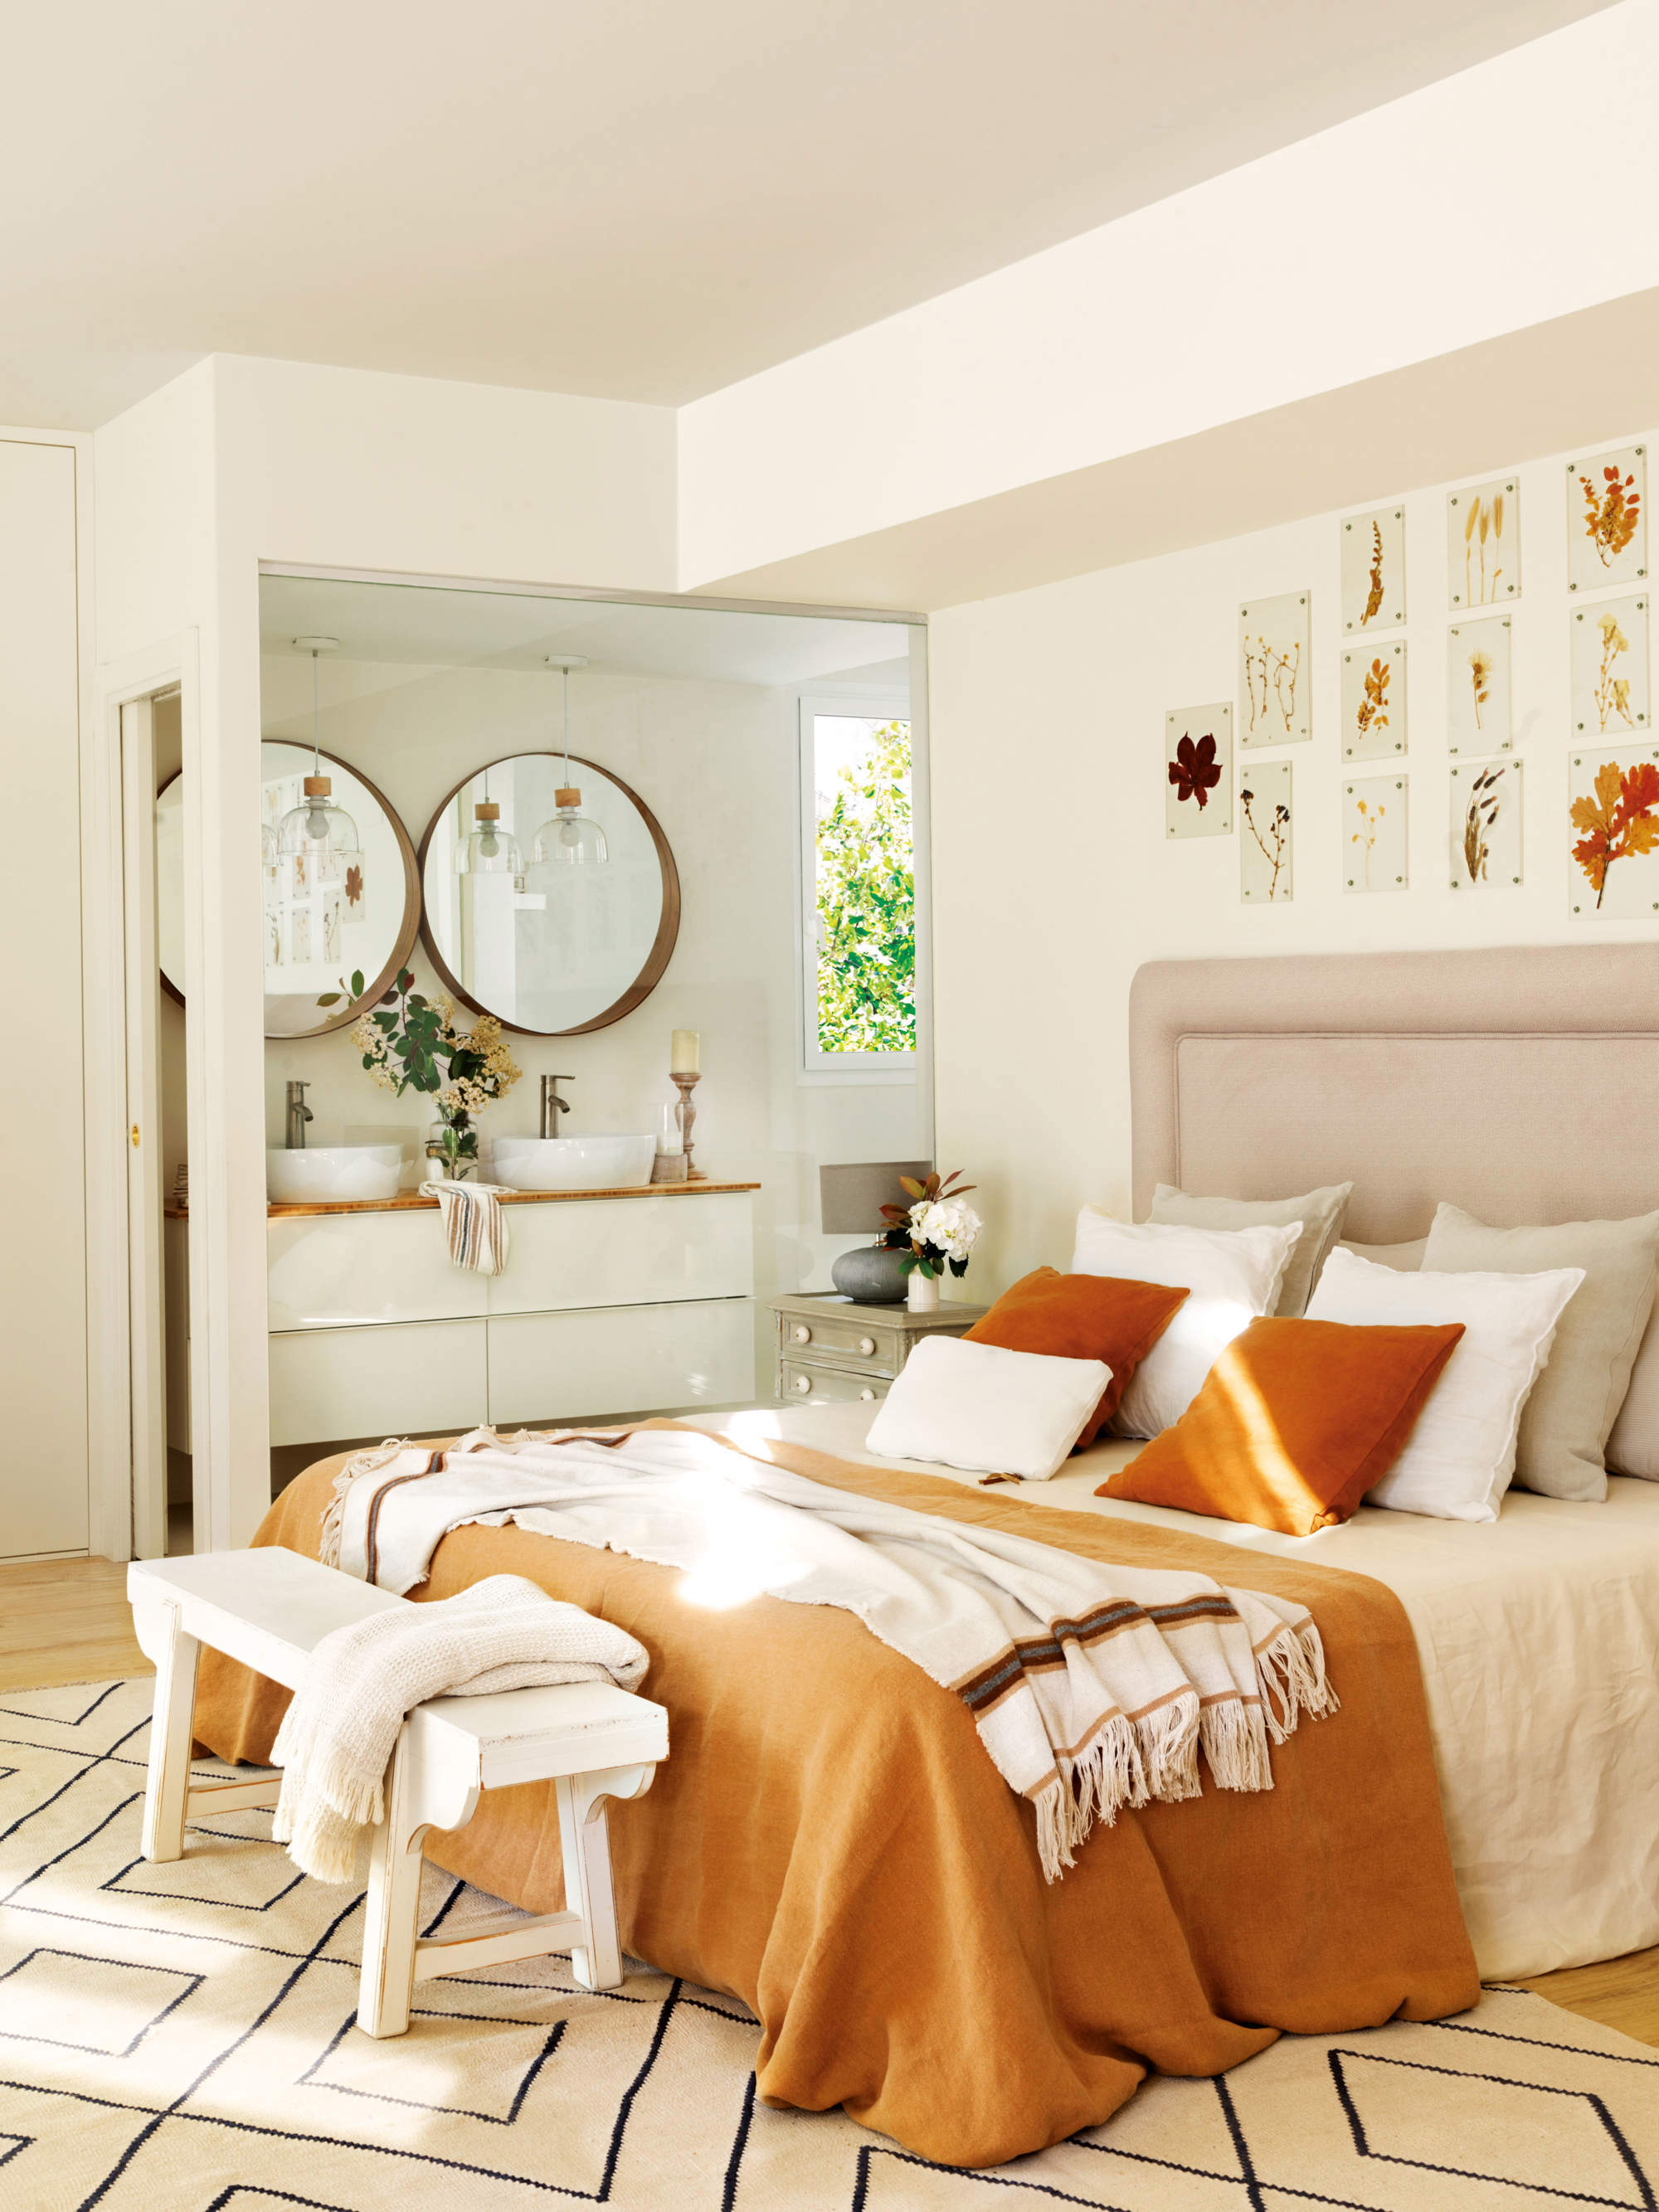 Dormitorio blanco con ropa de cama en tonos naranjas, baño con tabique acristalado, y decoración floral seca.